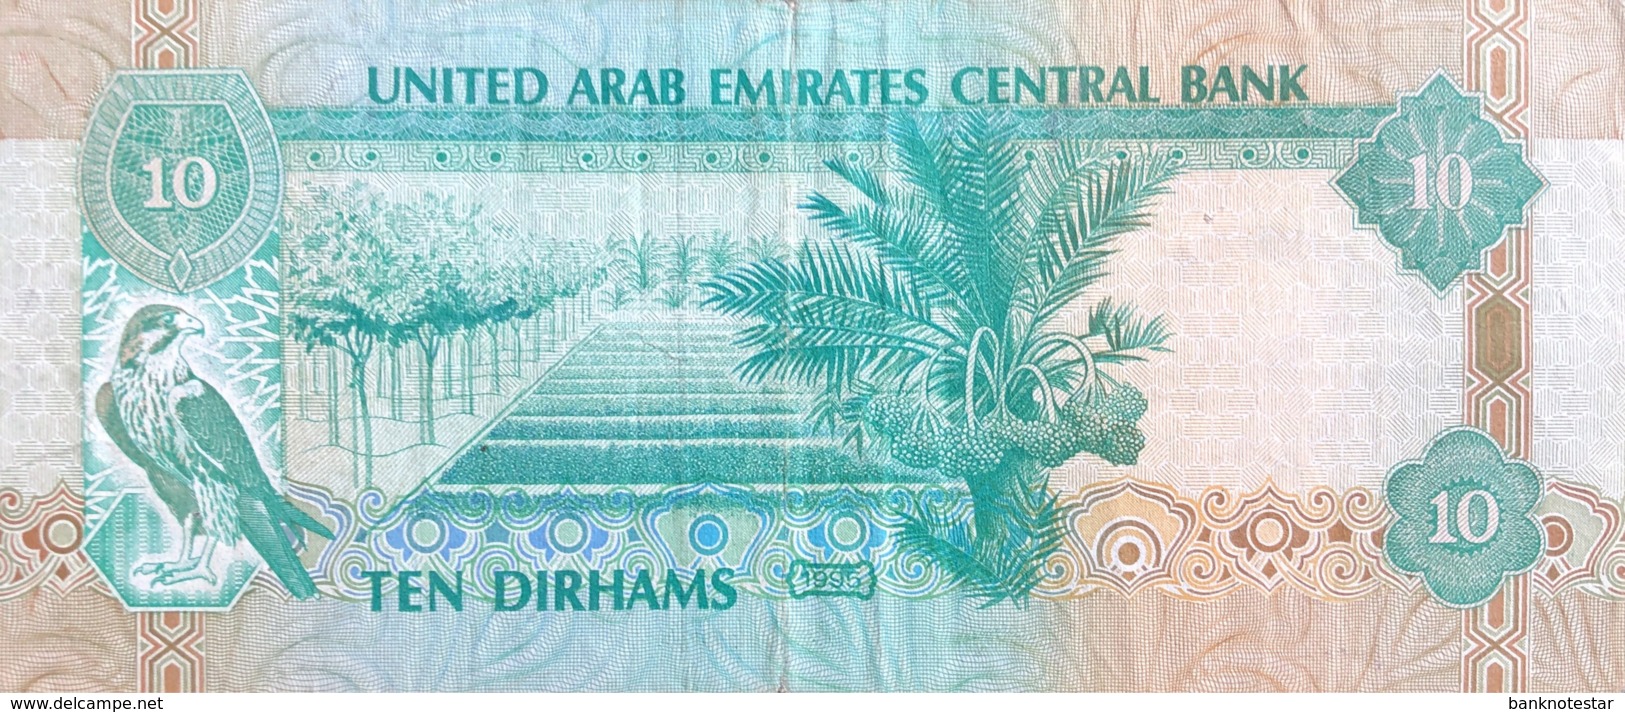 United Arab Emirates 10 Dirham, P-13b (1995) - Very Fine - Ver. Arab. Emirate